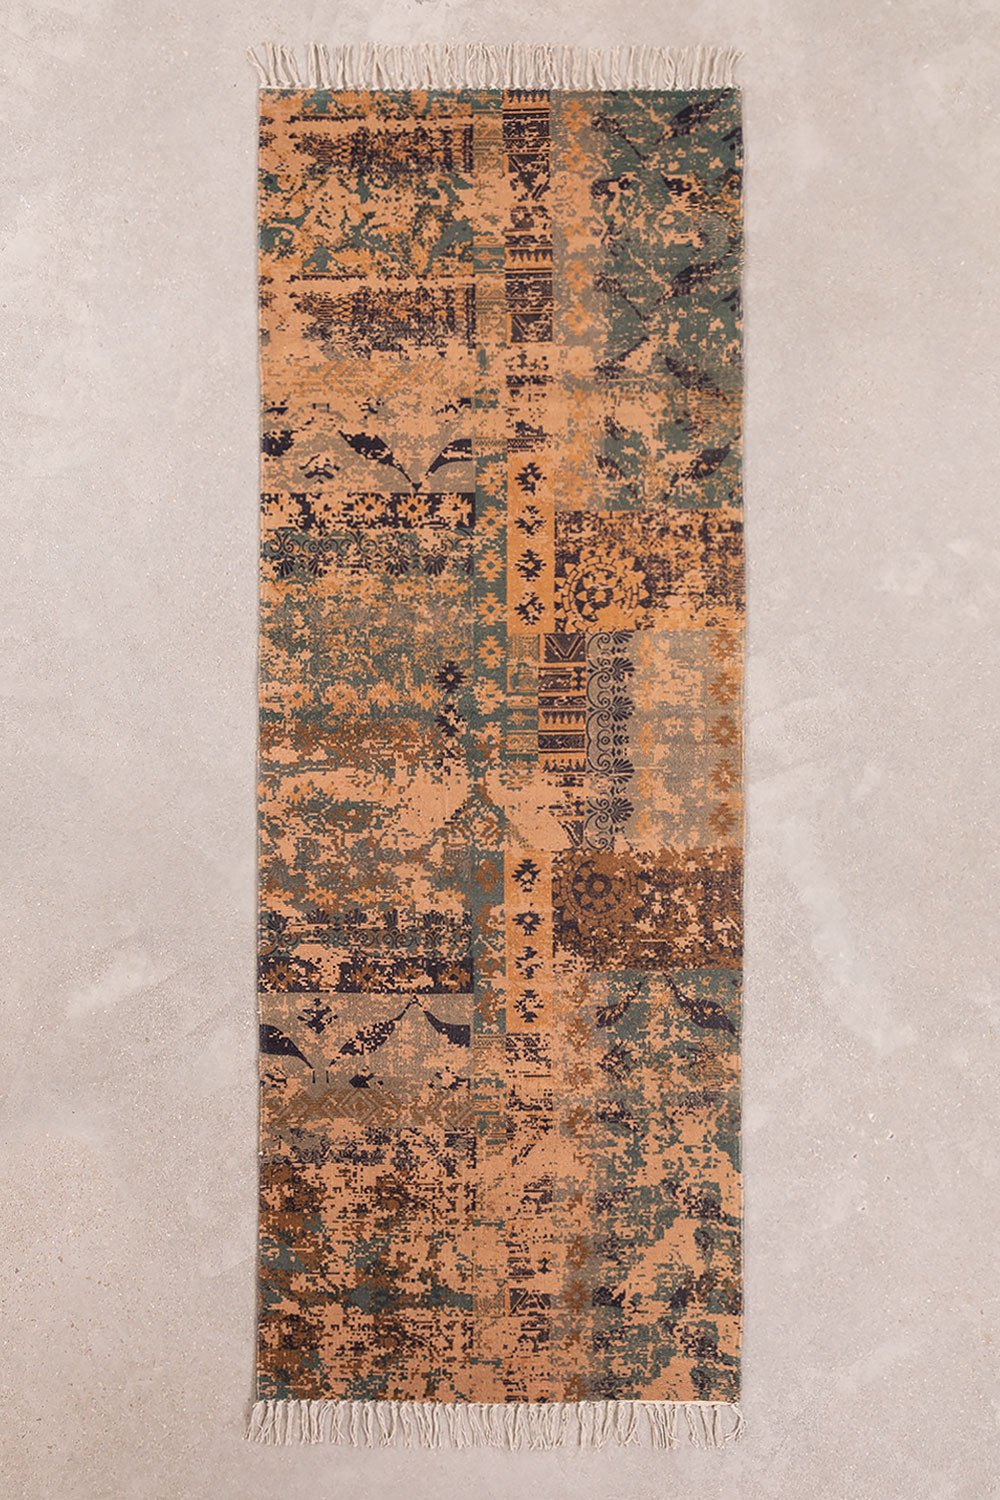 Katoenen vloerkleed (200x75 cm) Llac, galerij beeld 1